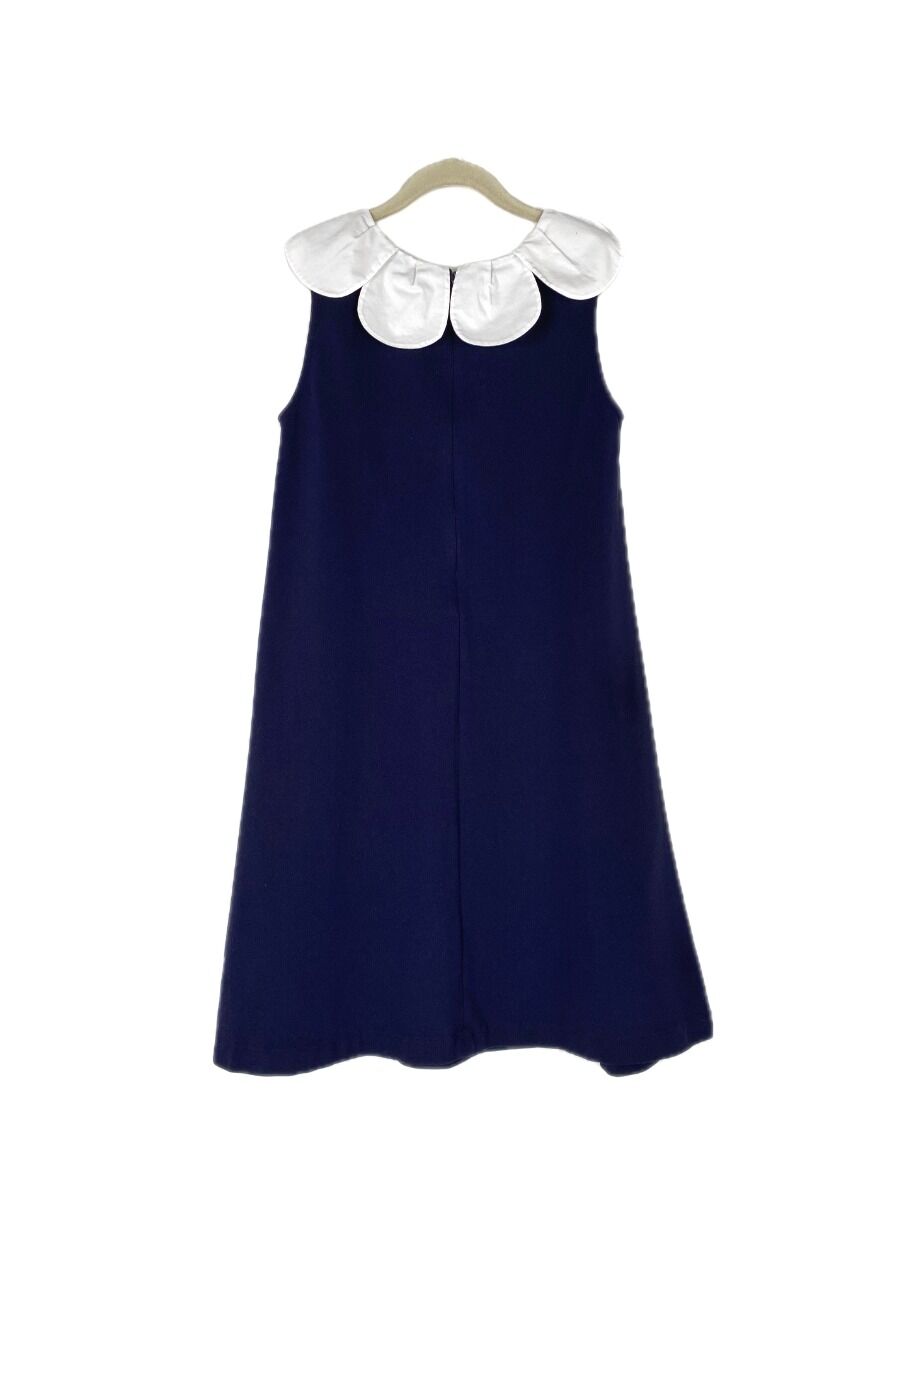 image 2 Детское платье темно-синего цвета с белым воротником